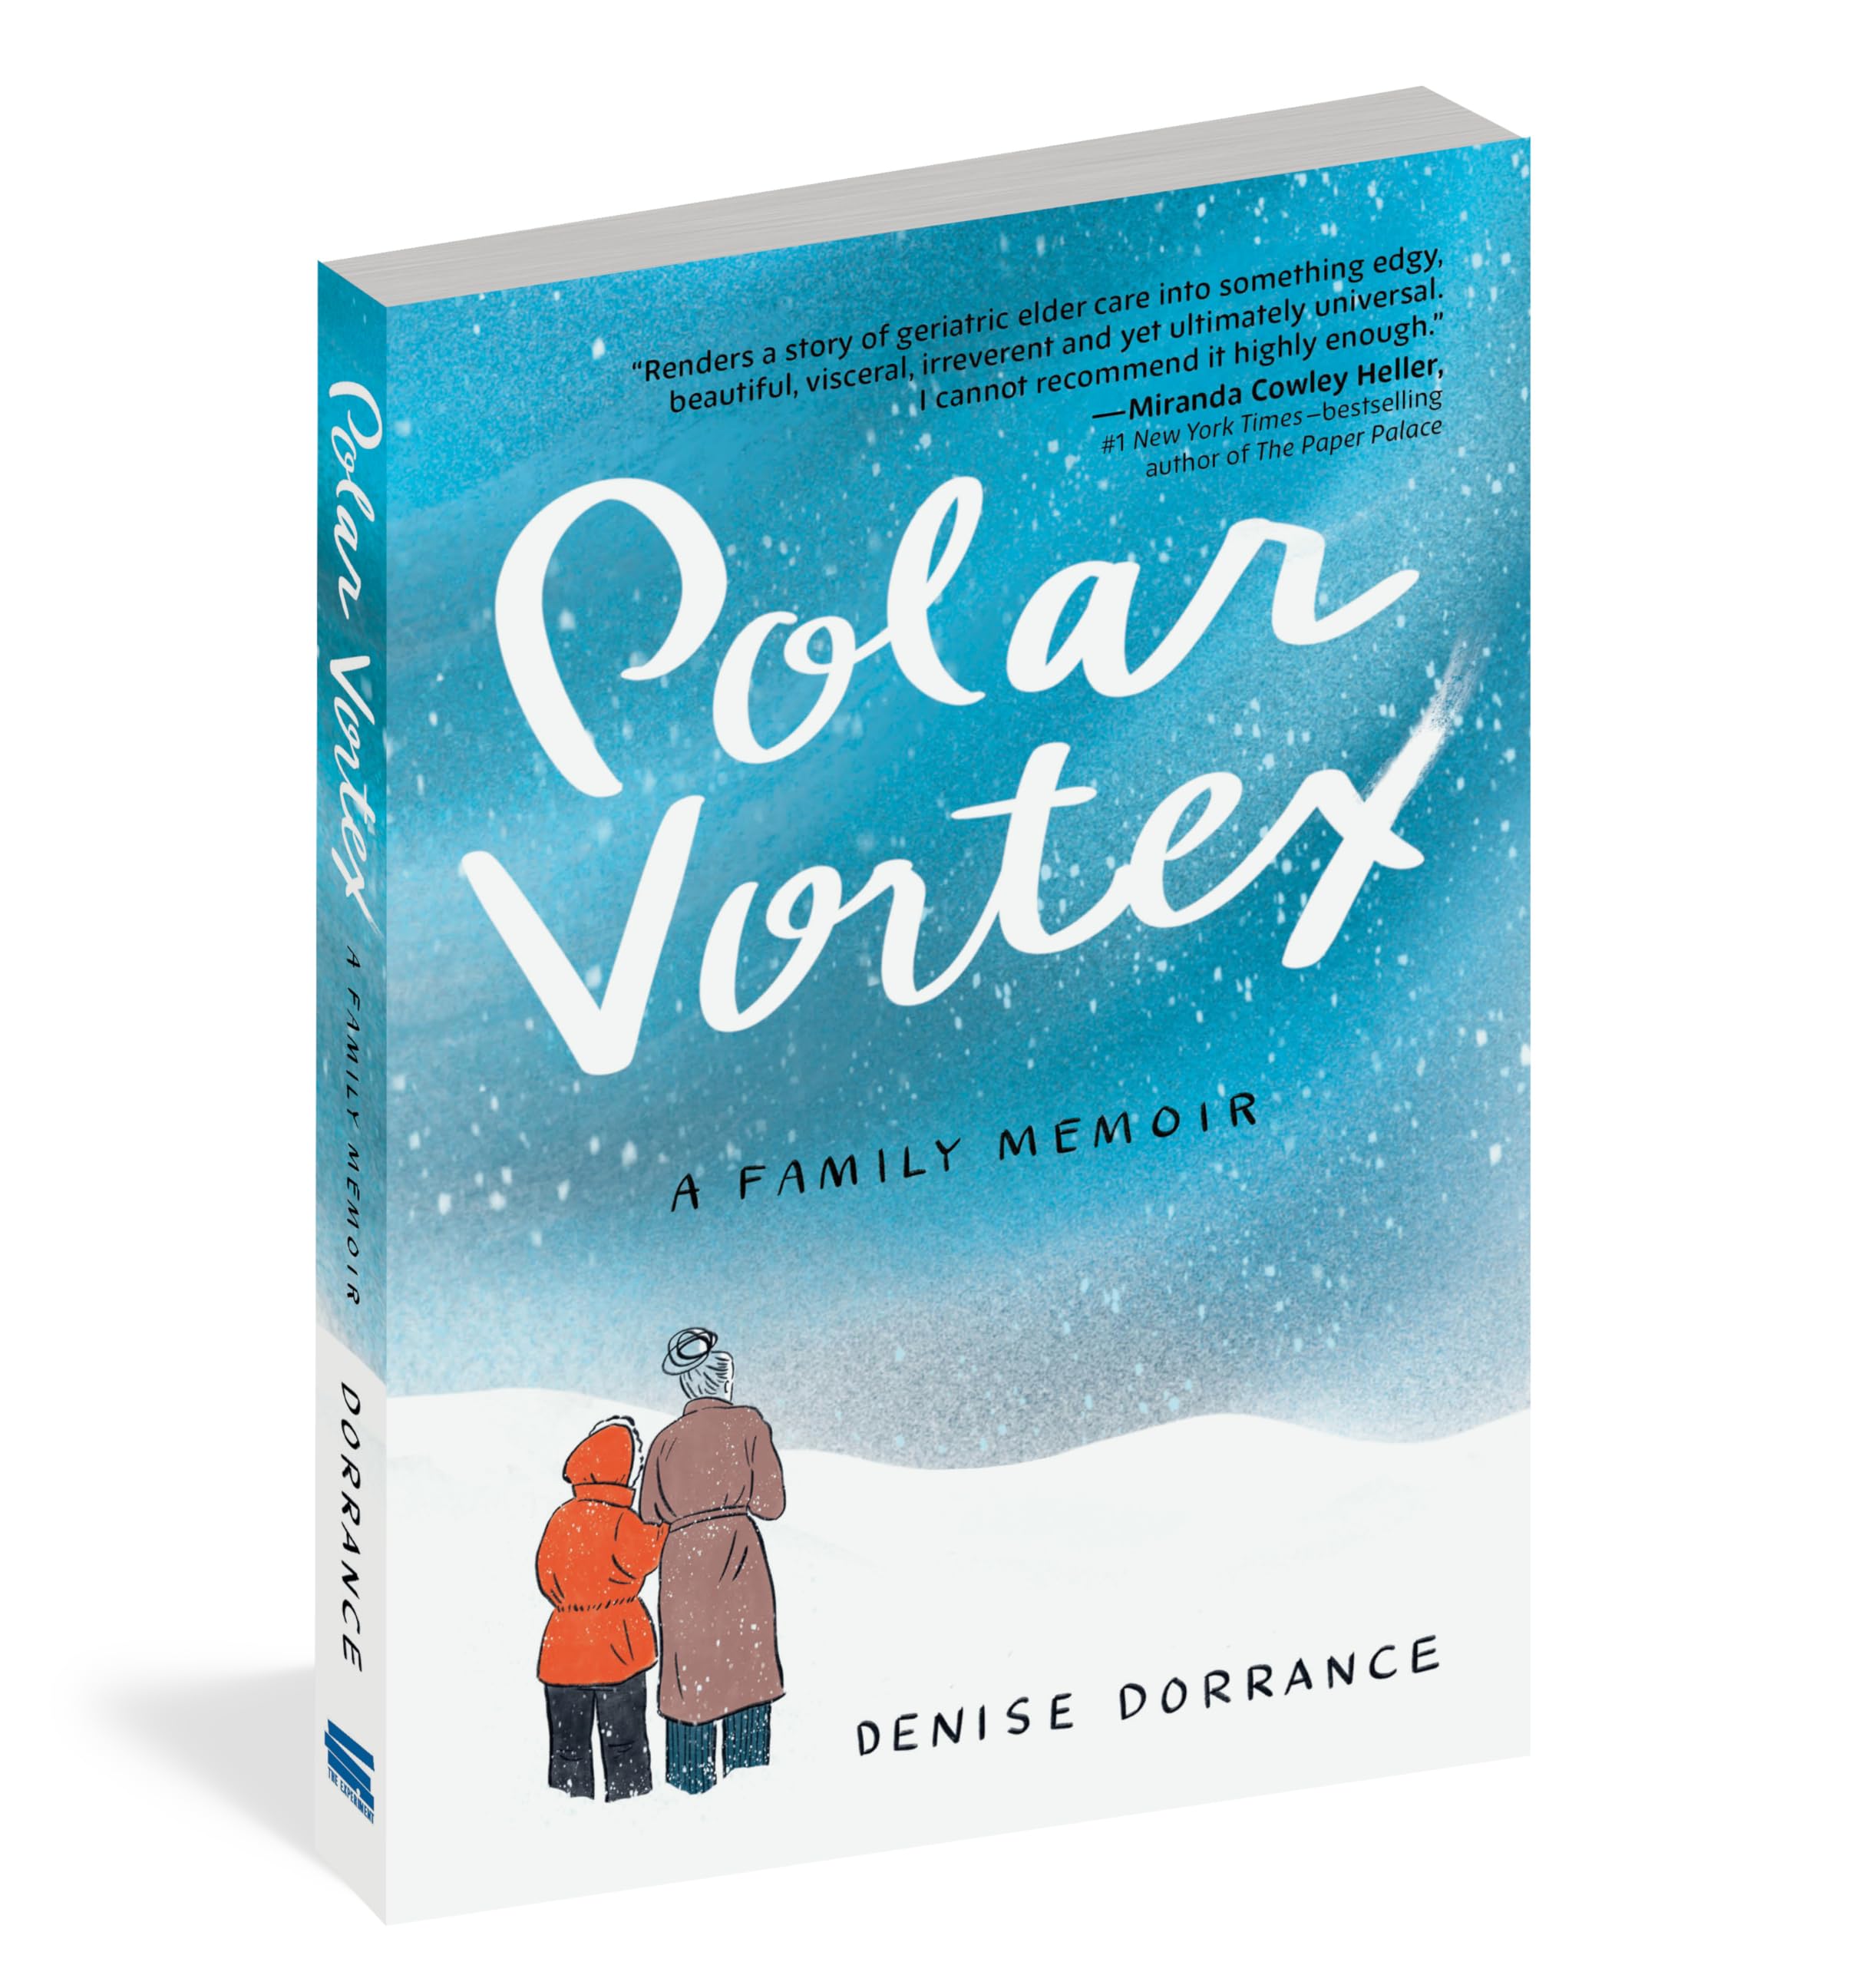 Polar Vortex: A Family Memoir